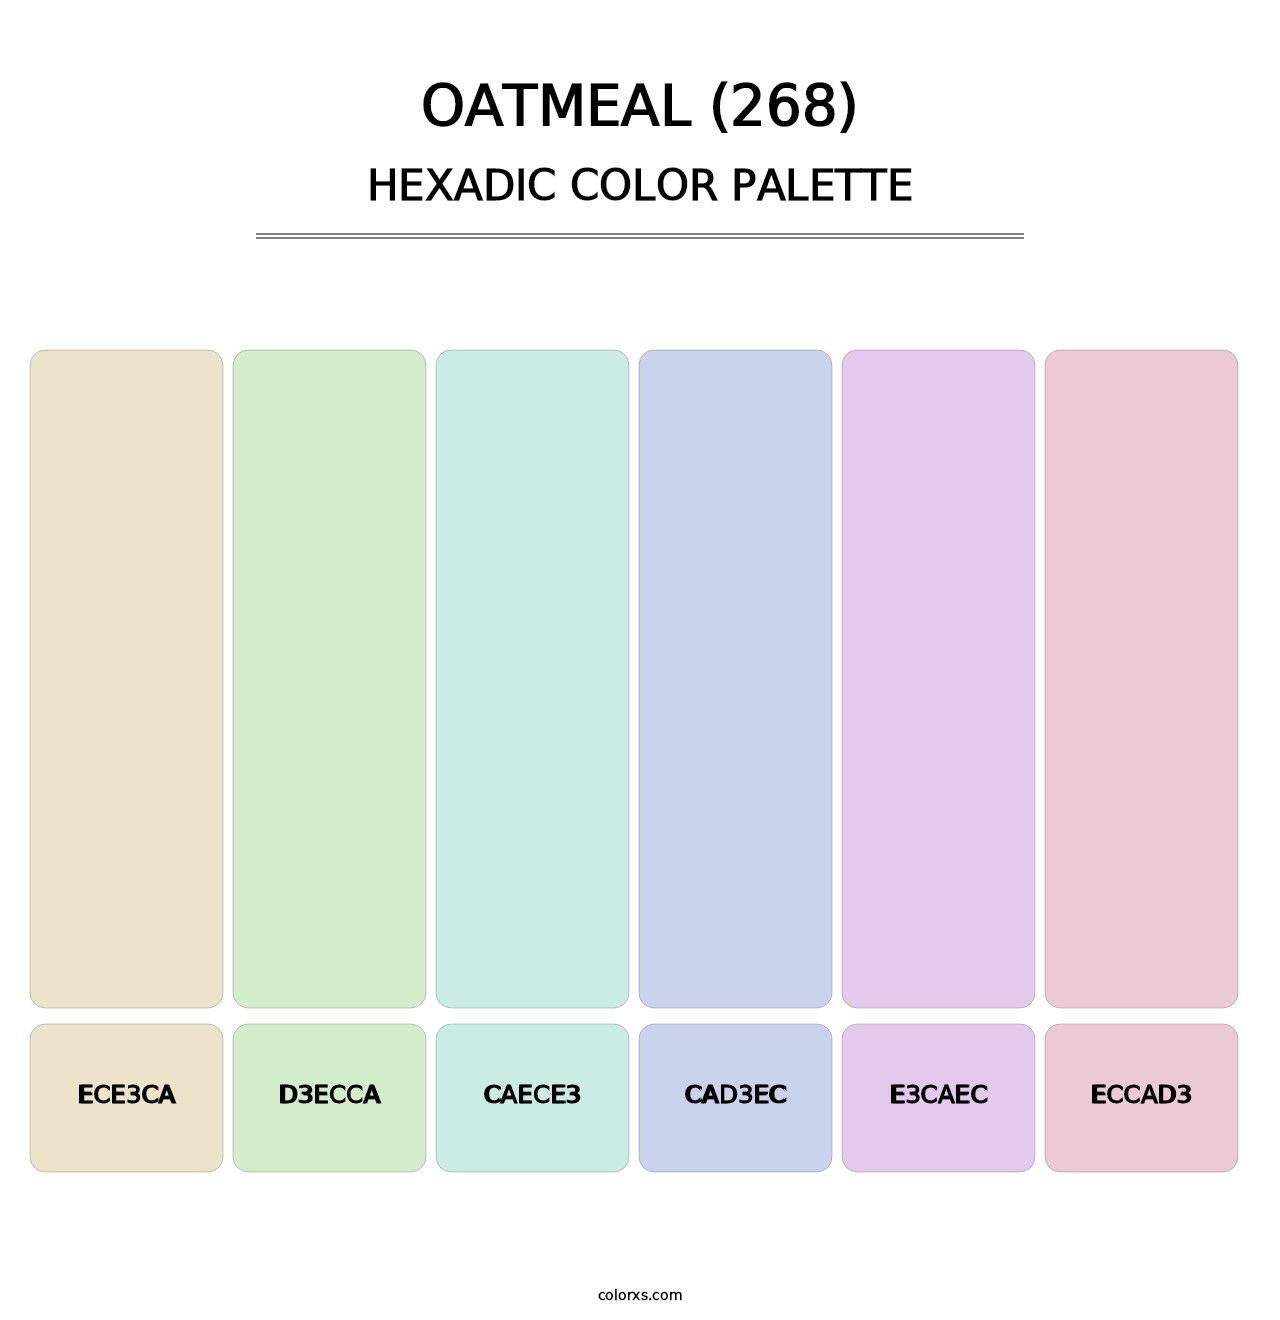 Oatmeal (268) - Hexadic Color Palette